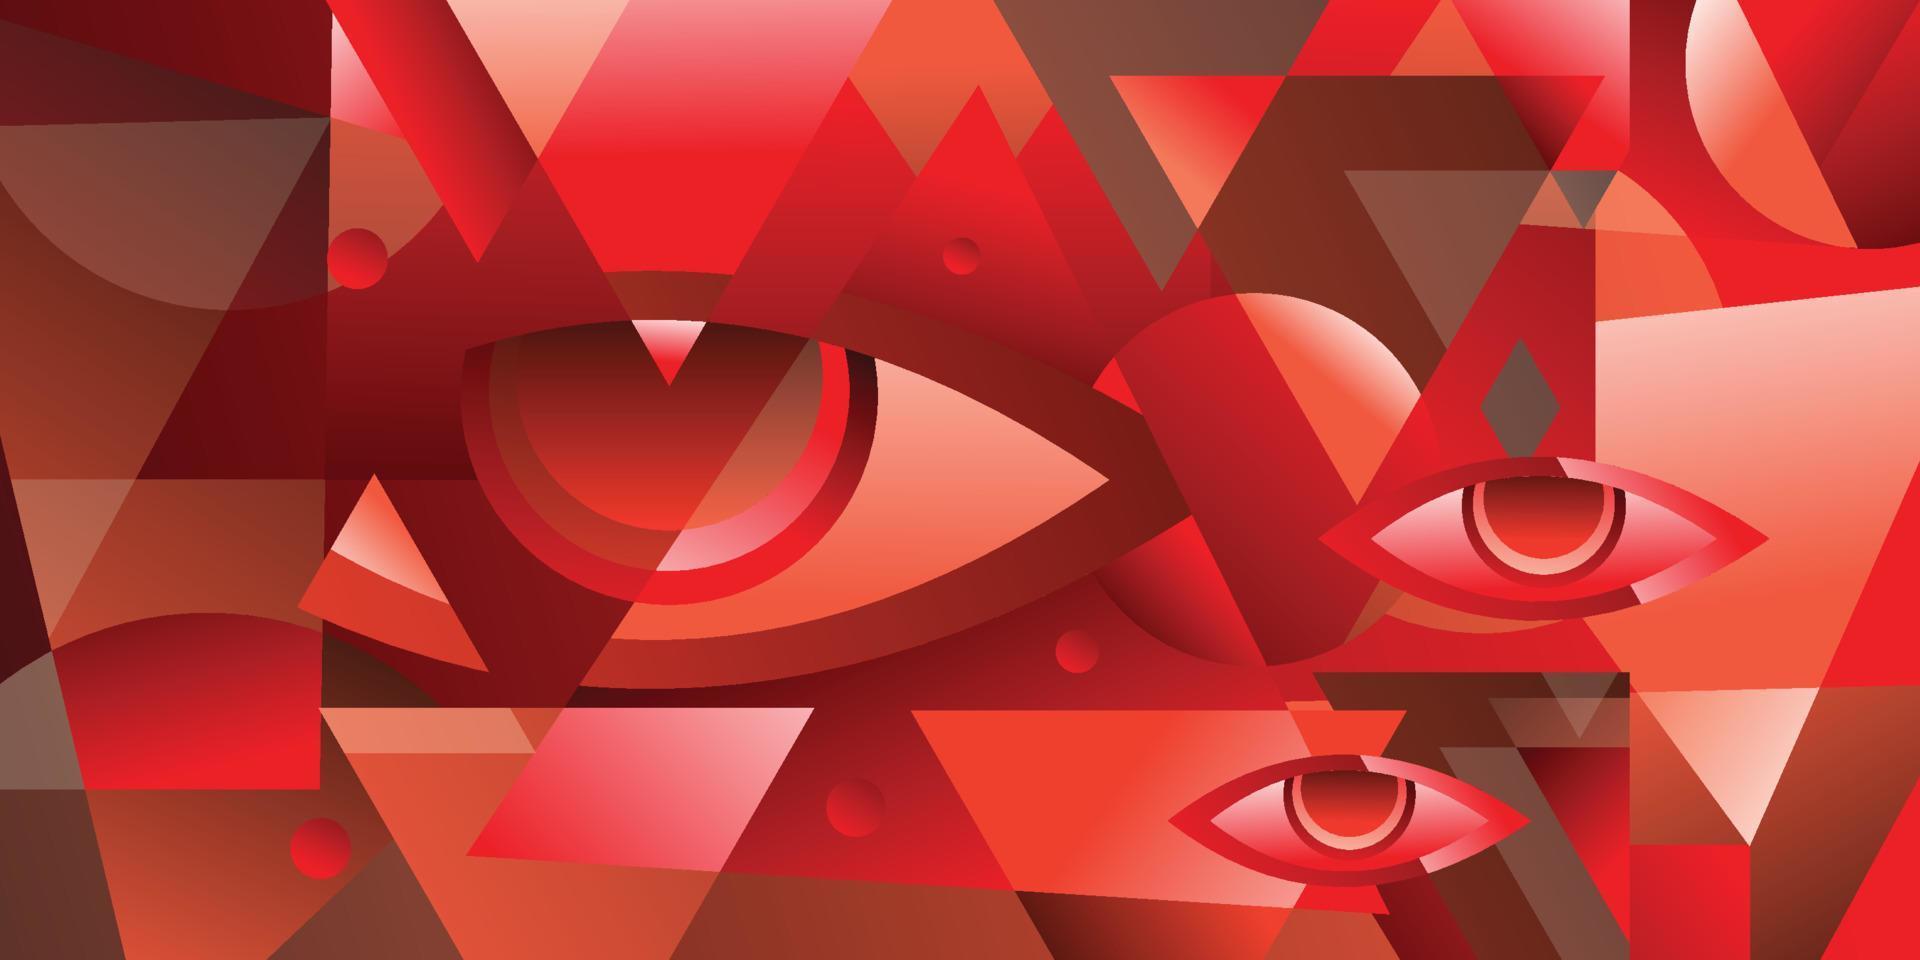 disegno vettoriale astratto rosso per banner copertina libro flayer e altri elementi grafici